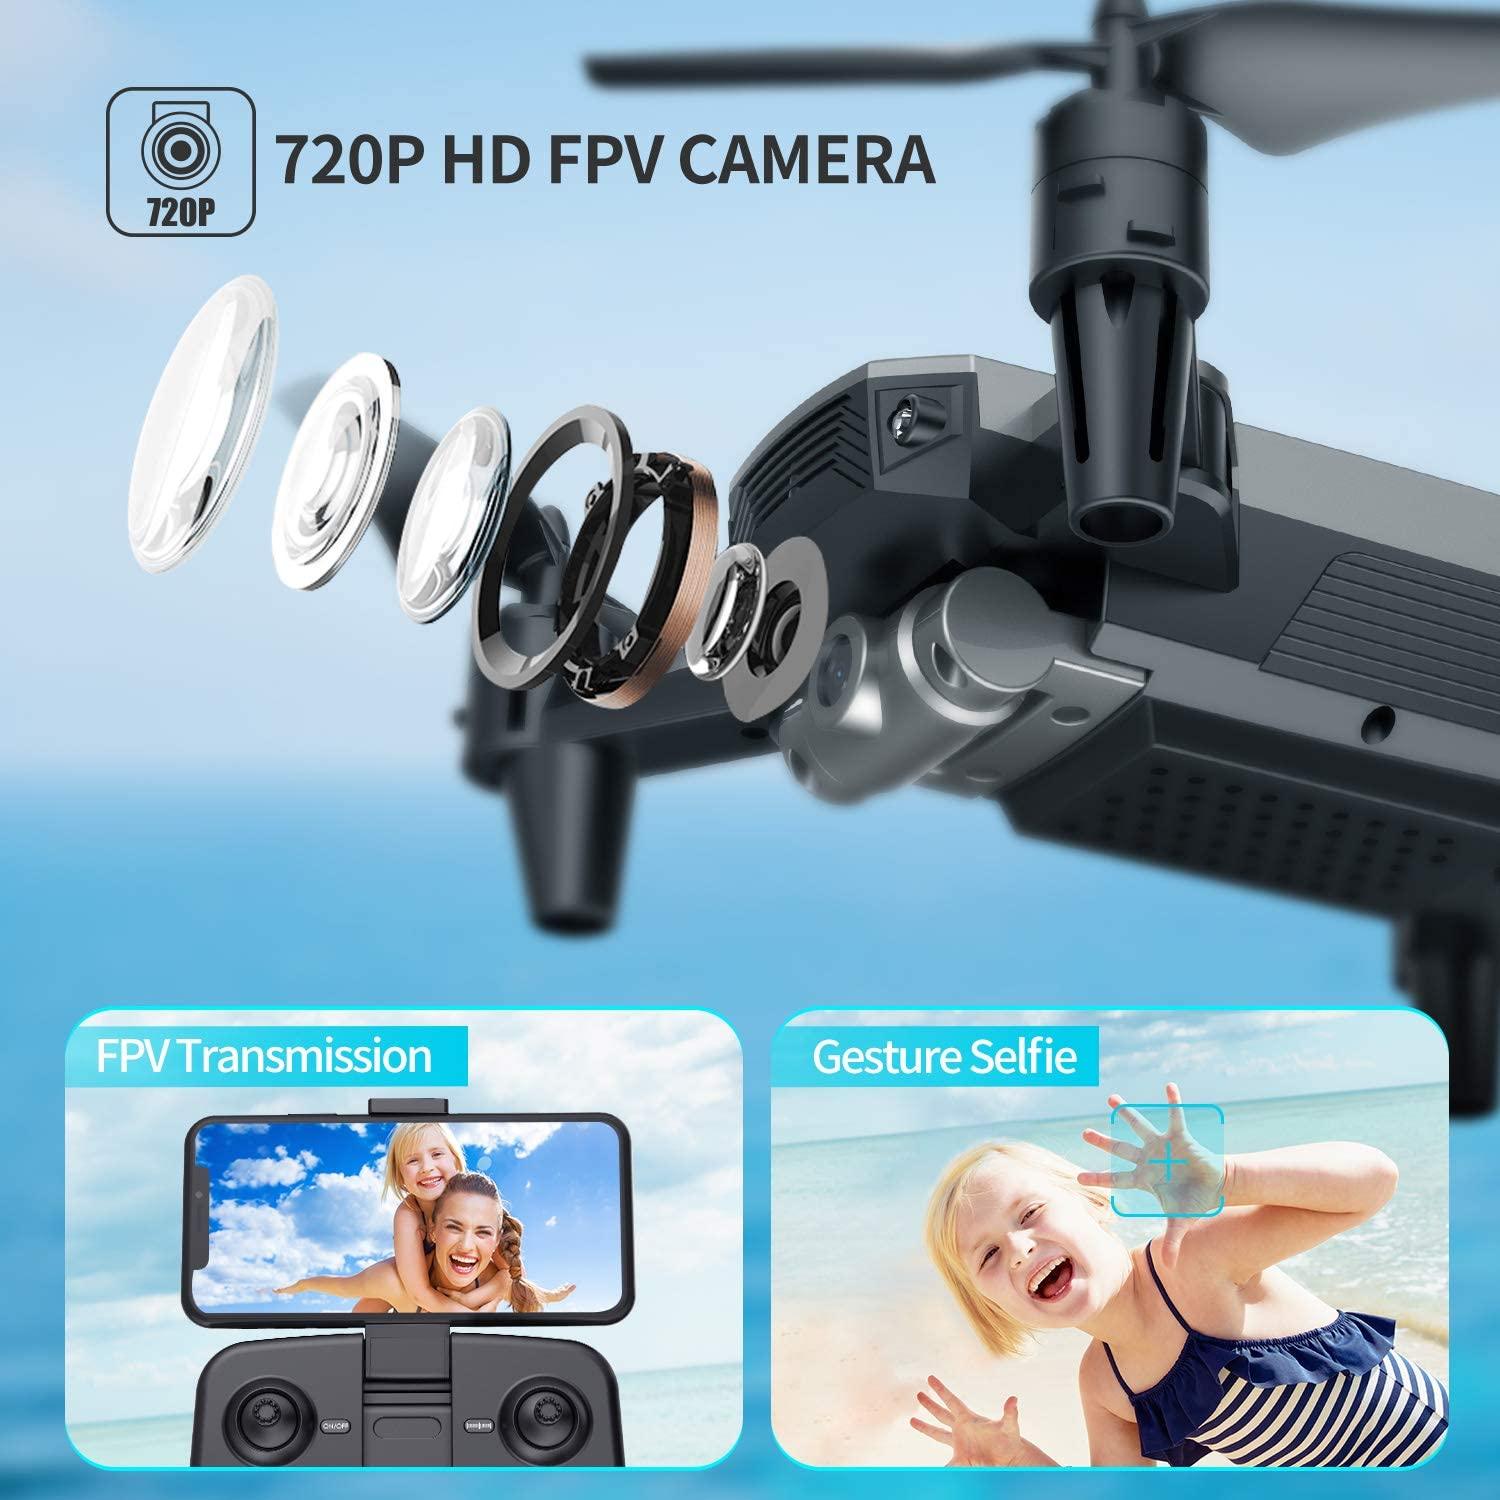 Mini Drones avec 2 Caméras 720P HD Drone pour Enfants Débutant RC I